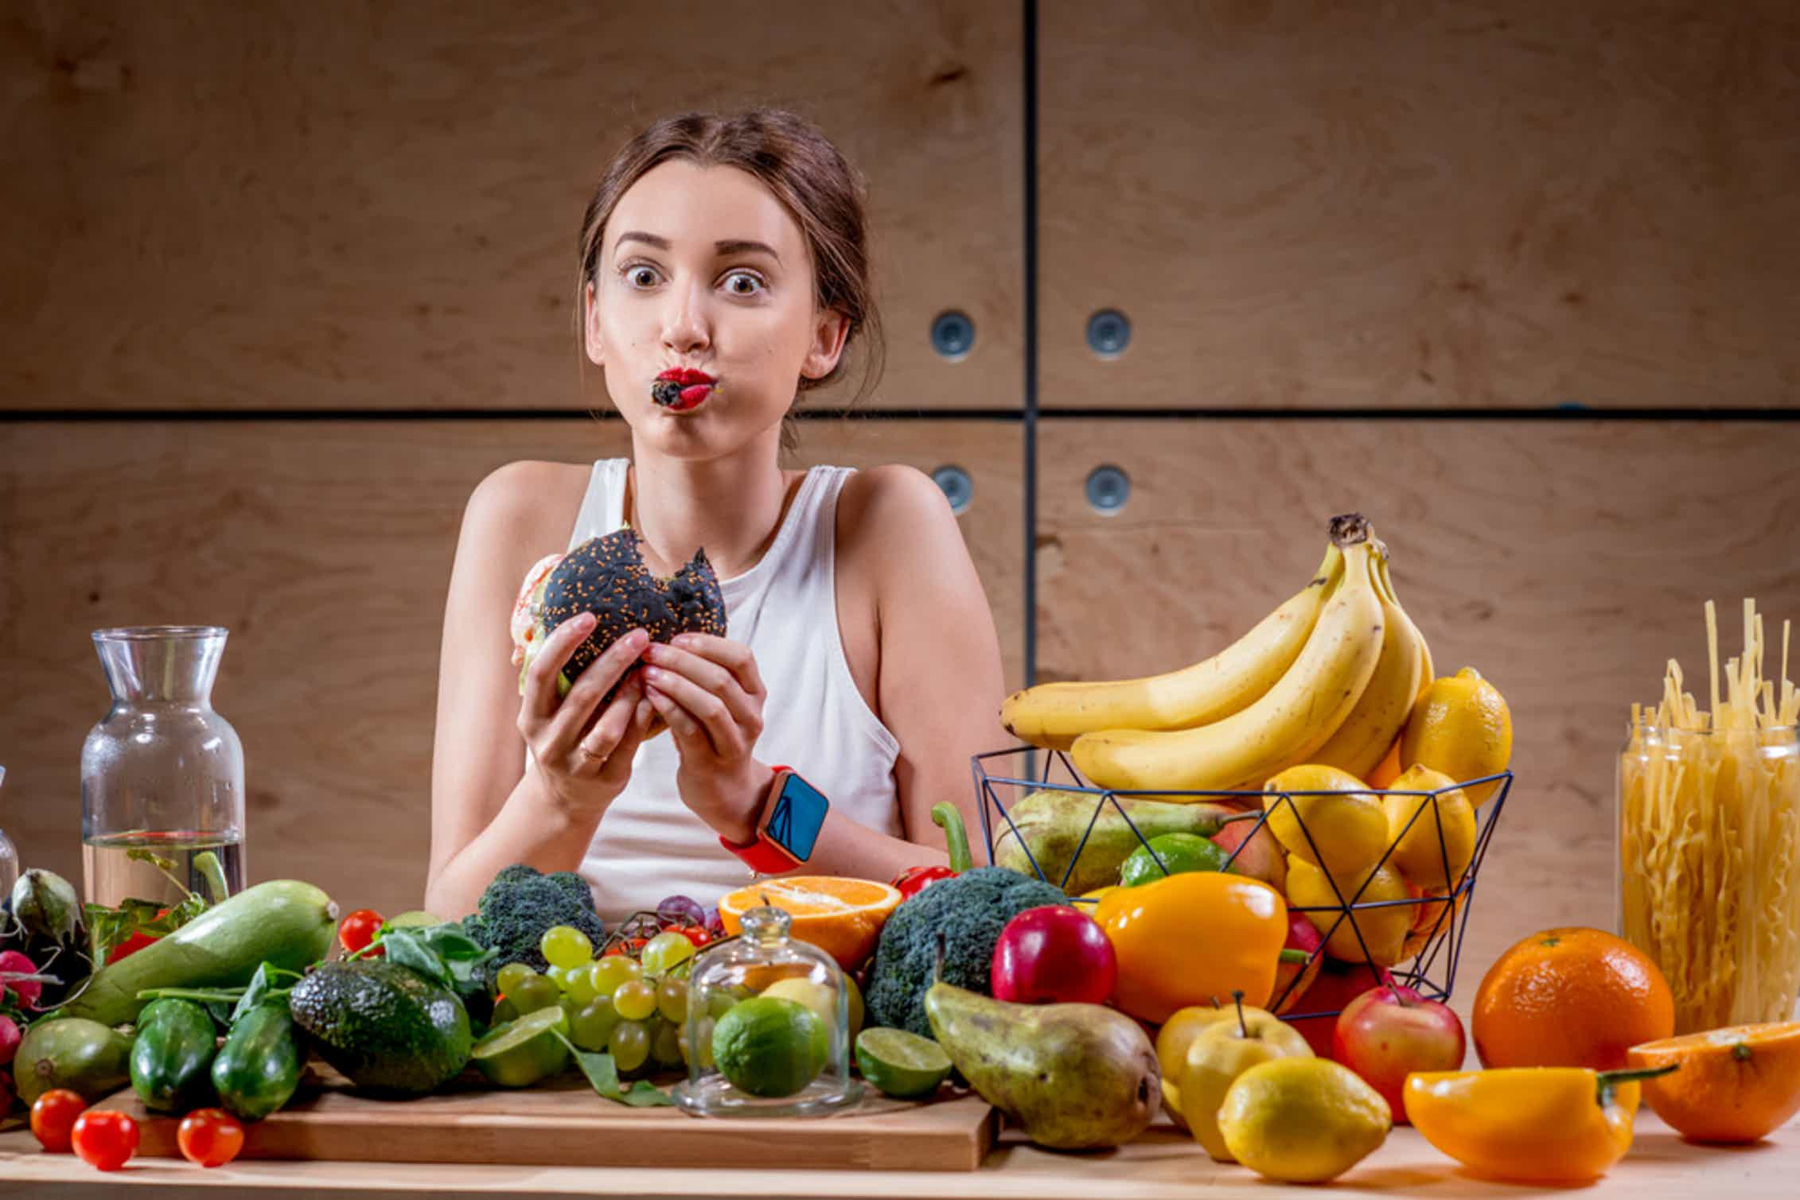 Διατροφή: Ποιες τροφές μπορούν να μειώσουν το άγχος;